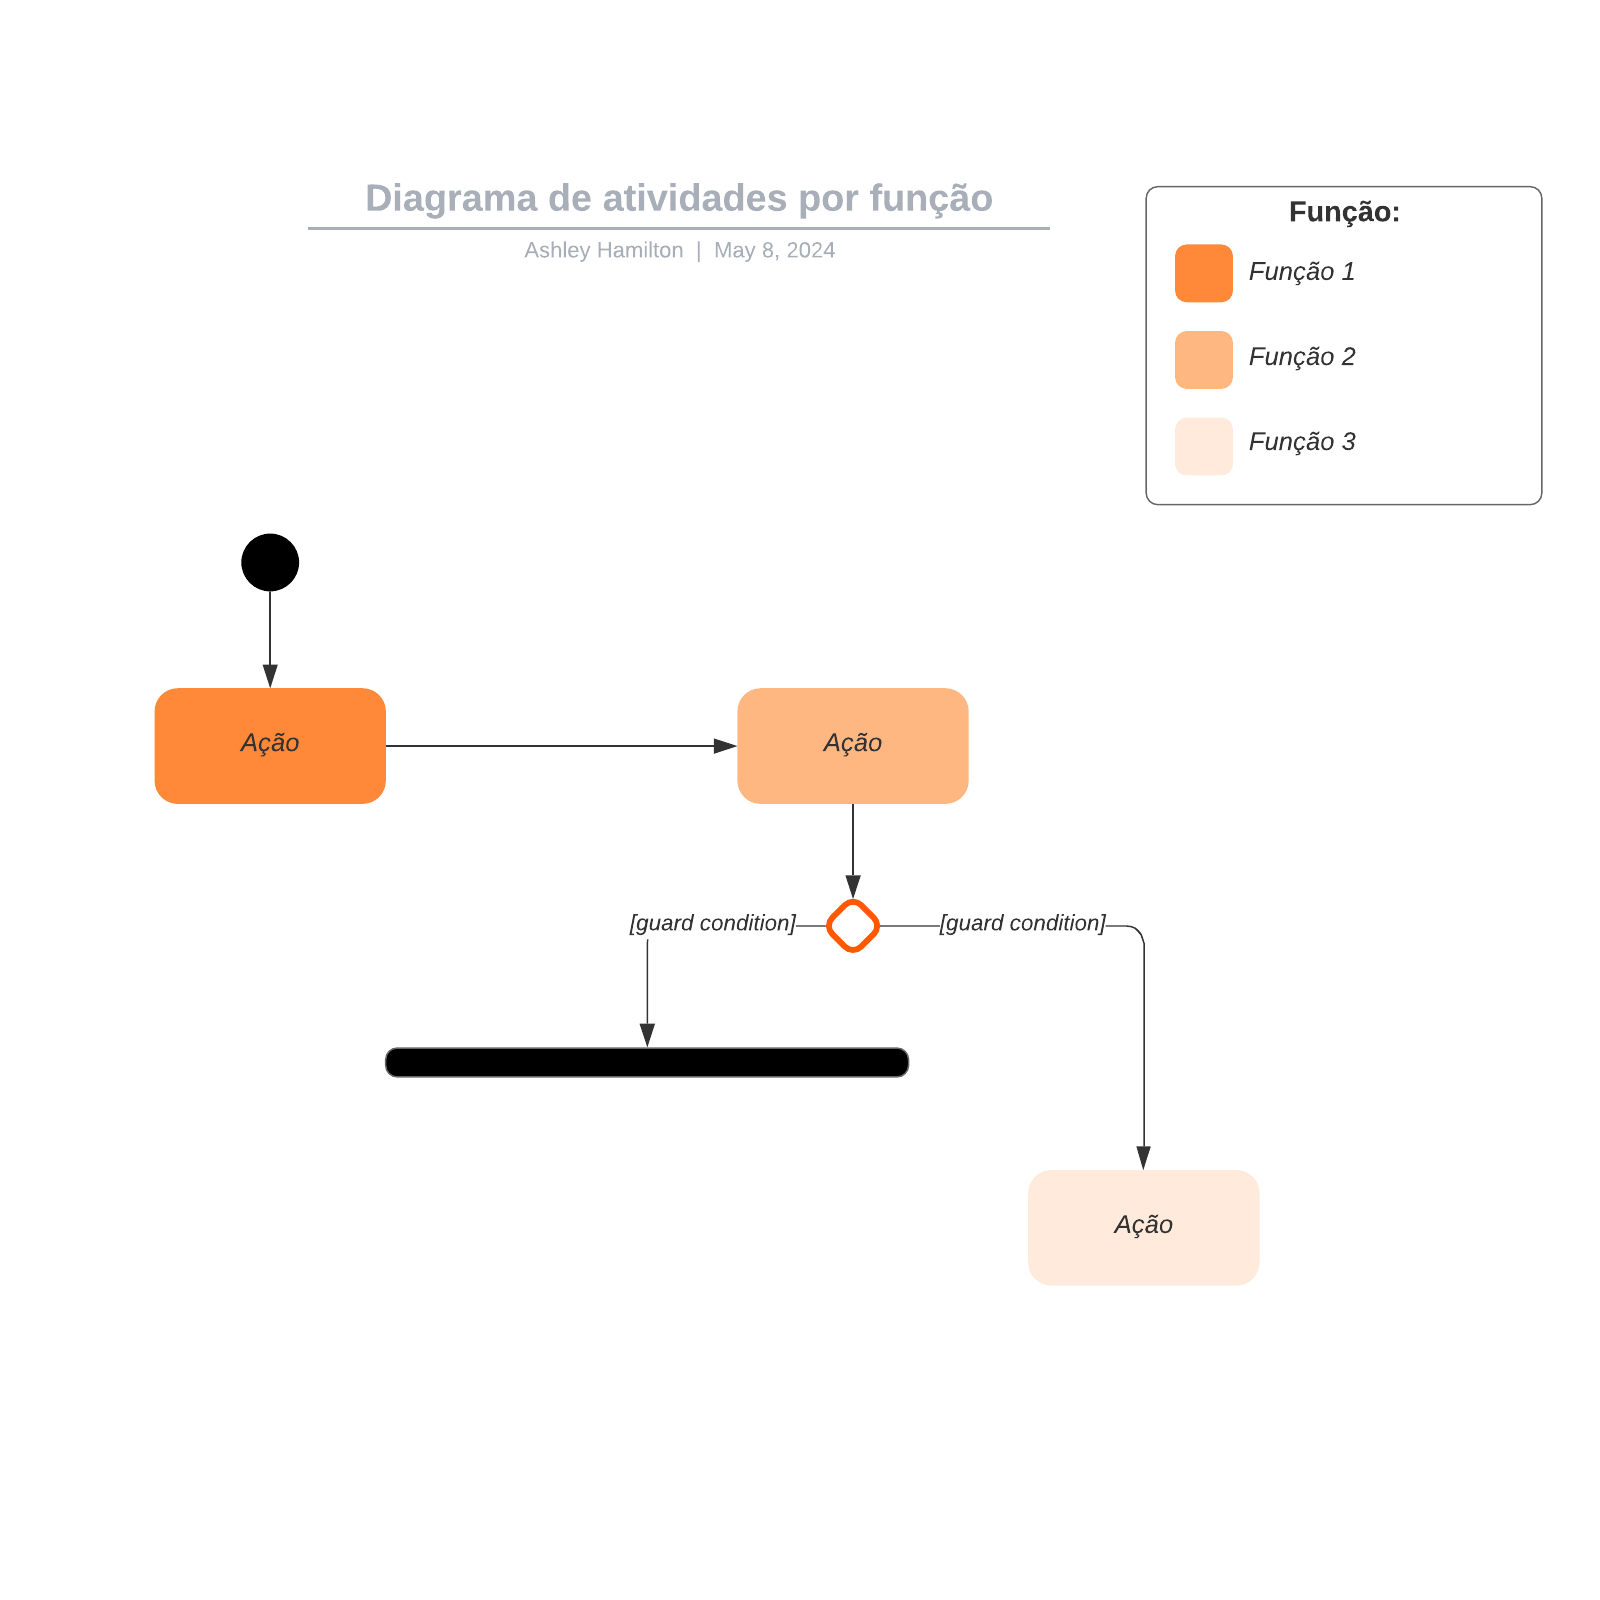 Diagrama de atividades por função example